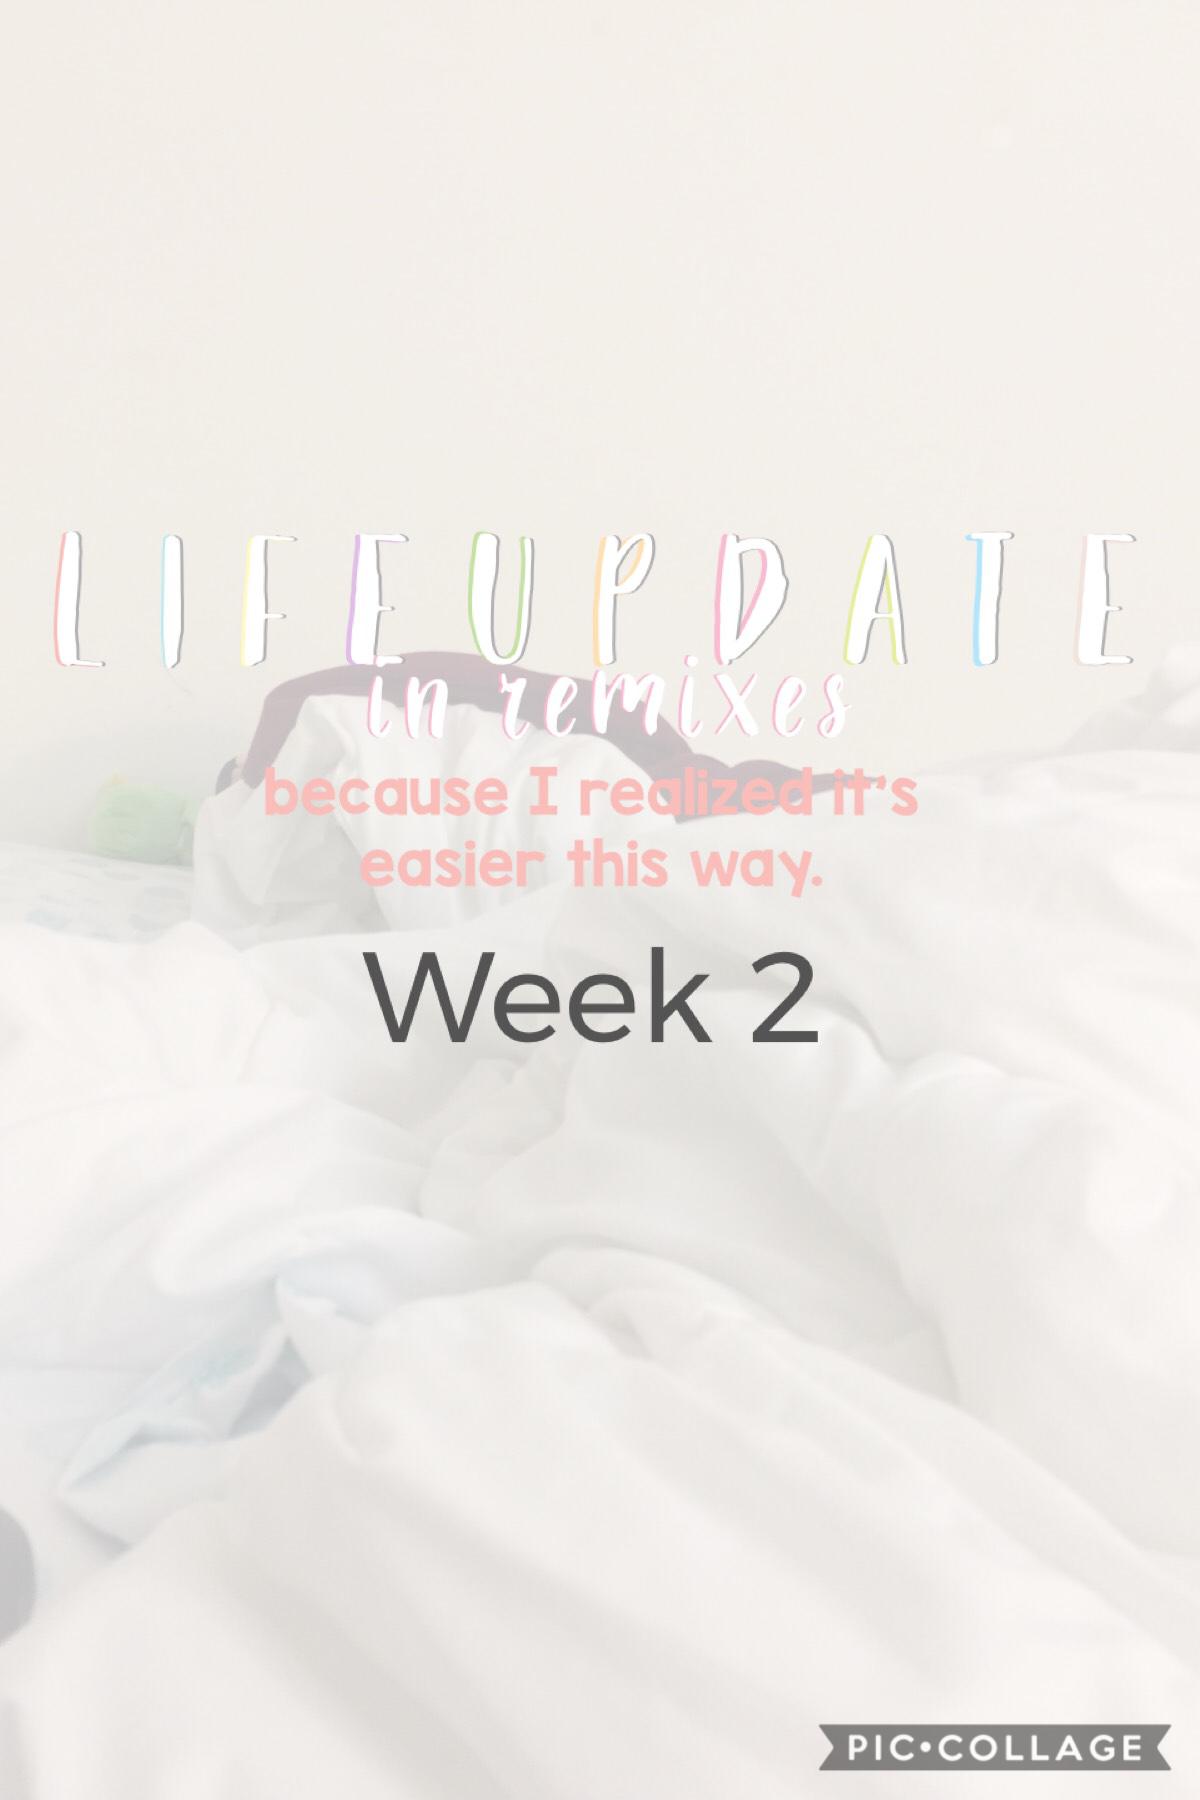 Life update week 2! 1.20-27.19. ♥️